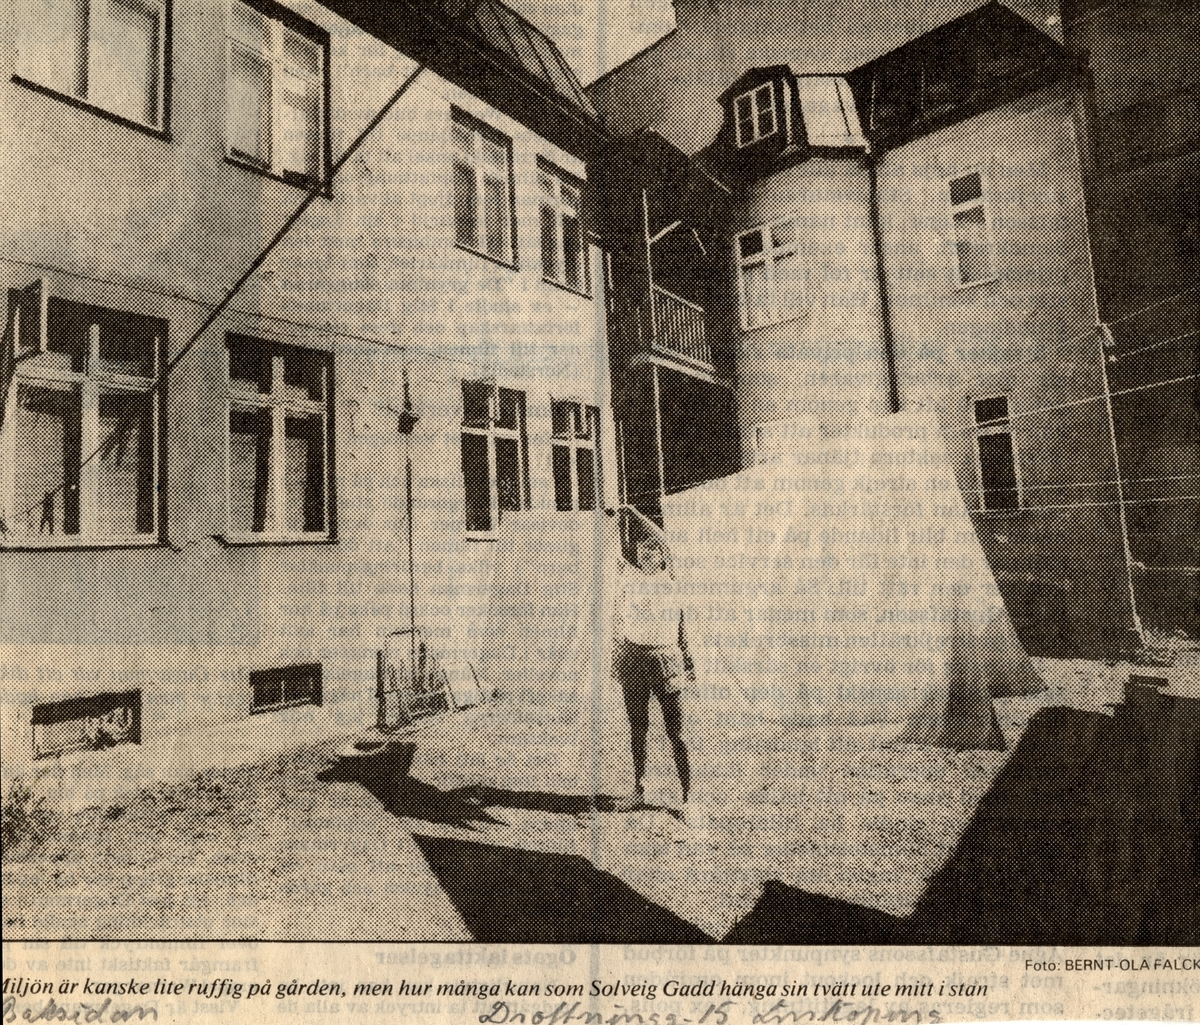 Bilden visar en kvinna som hänger tvätt på innergården på Drottninggatan 15.
För att retas hängdes underkläderna på den delen av tvättlinan som löpte framför gårdstantens fönster.